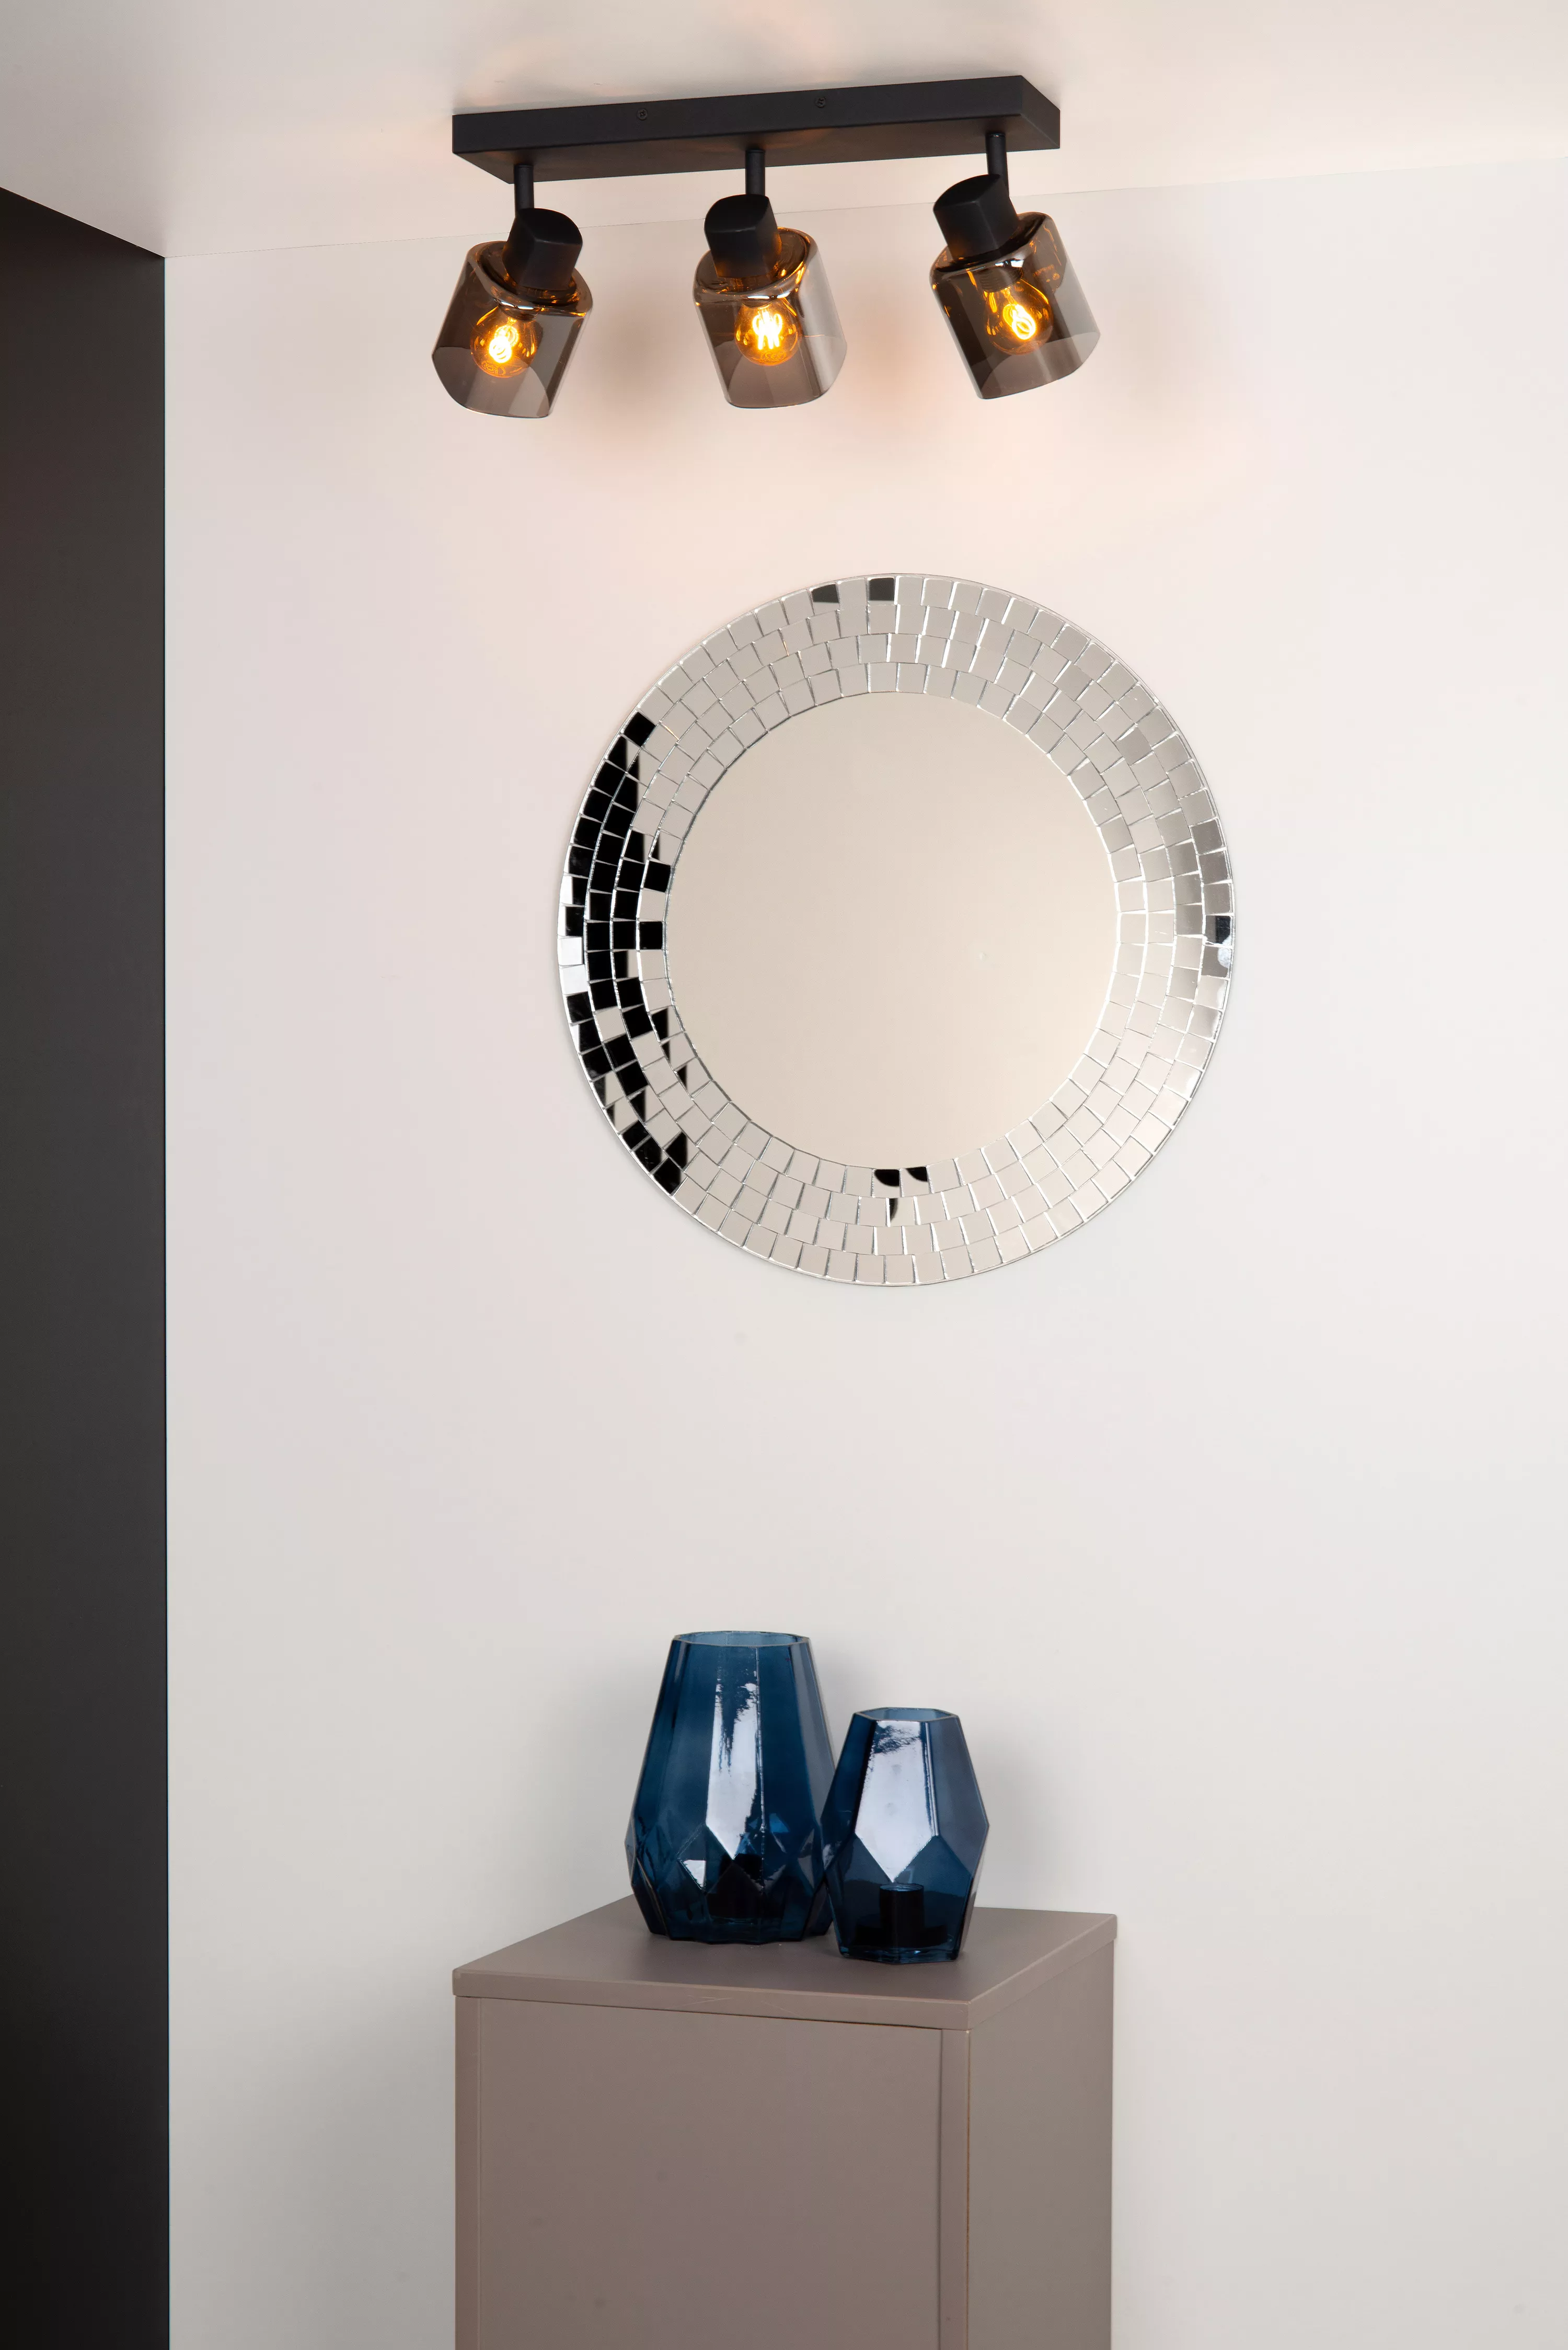 Stropné svietidlo Alion s tromi tienidlami je ideálne na osvetlenie obývačky alebo kuchyne. Je vhodné doplniť ho dekoratívnou alebo stmievateľnou žiarovkou.